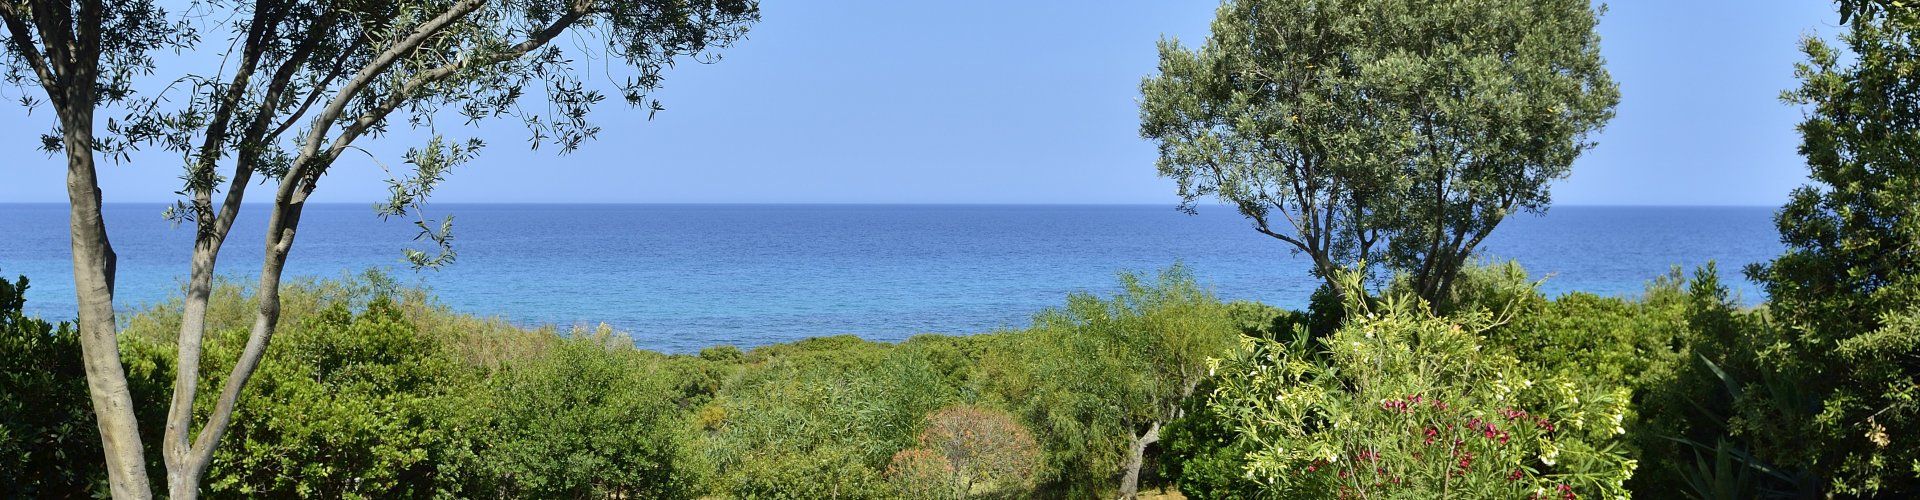 Groß angelegter Garten mit Blick auf das türkisfarbene Meer 